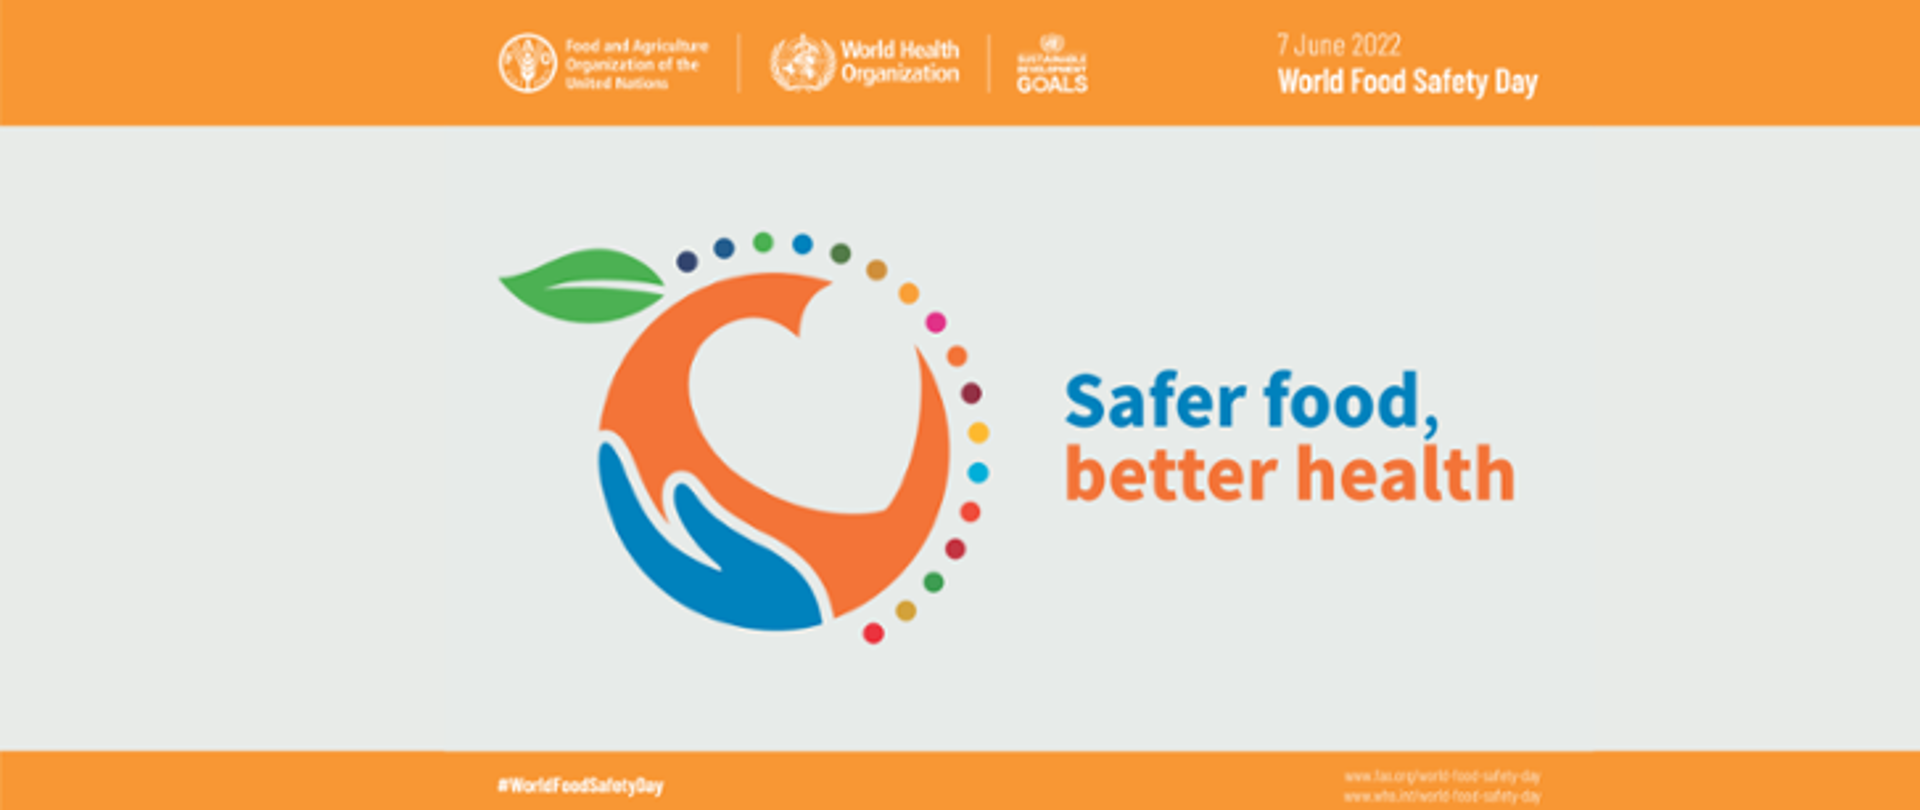 Grafika przedstawie symboliczne zdjęcie owoca wraz z sercem, obok którego znajduje się napis: Safer food, better health. Na górze grafiki widnieje logo WHO wraz z datą Światowego Dnia Bezpieczeństwa Żywności.